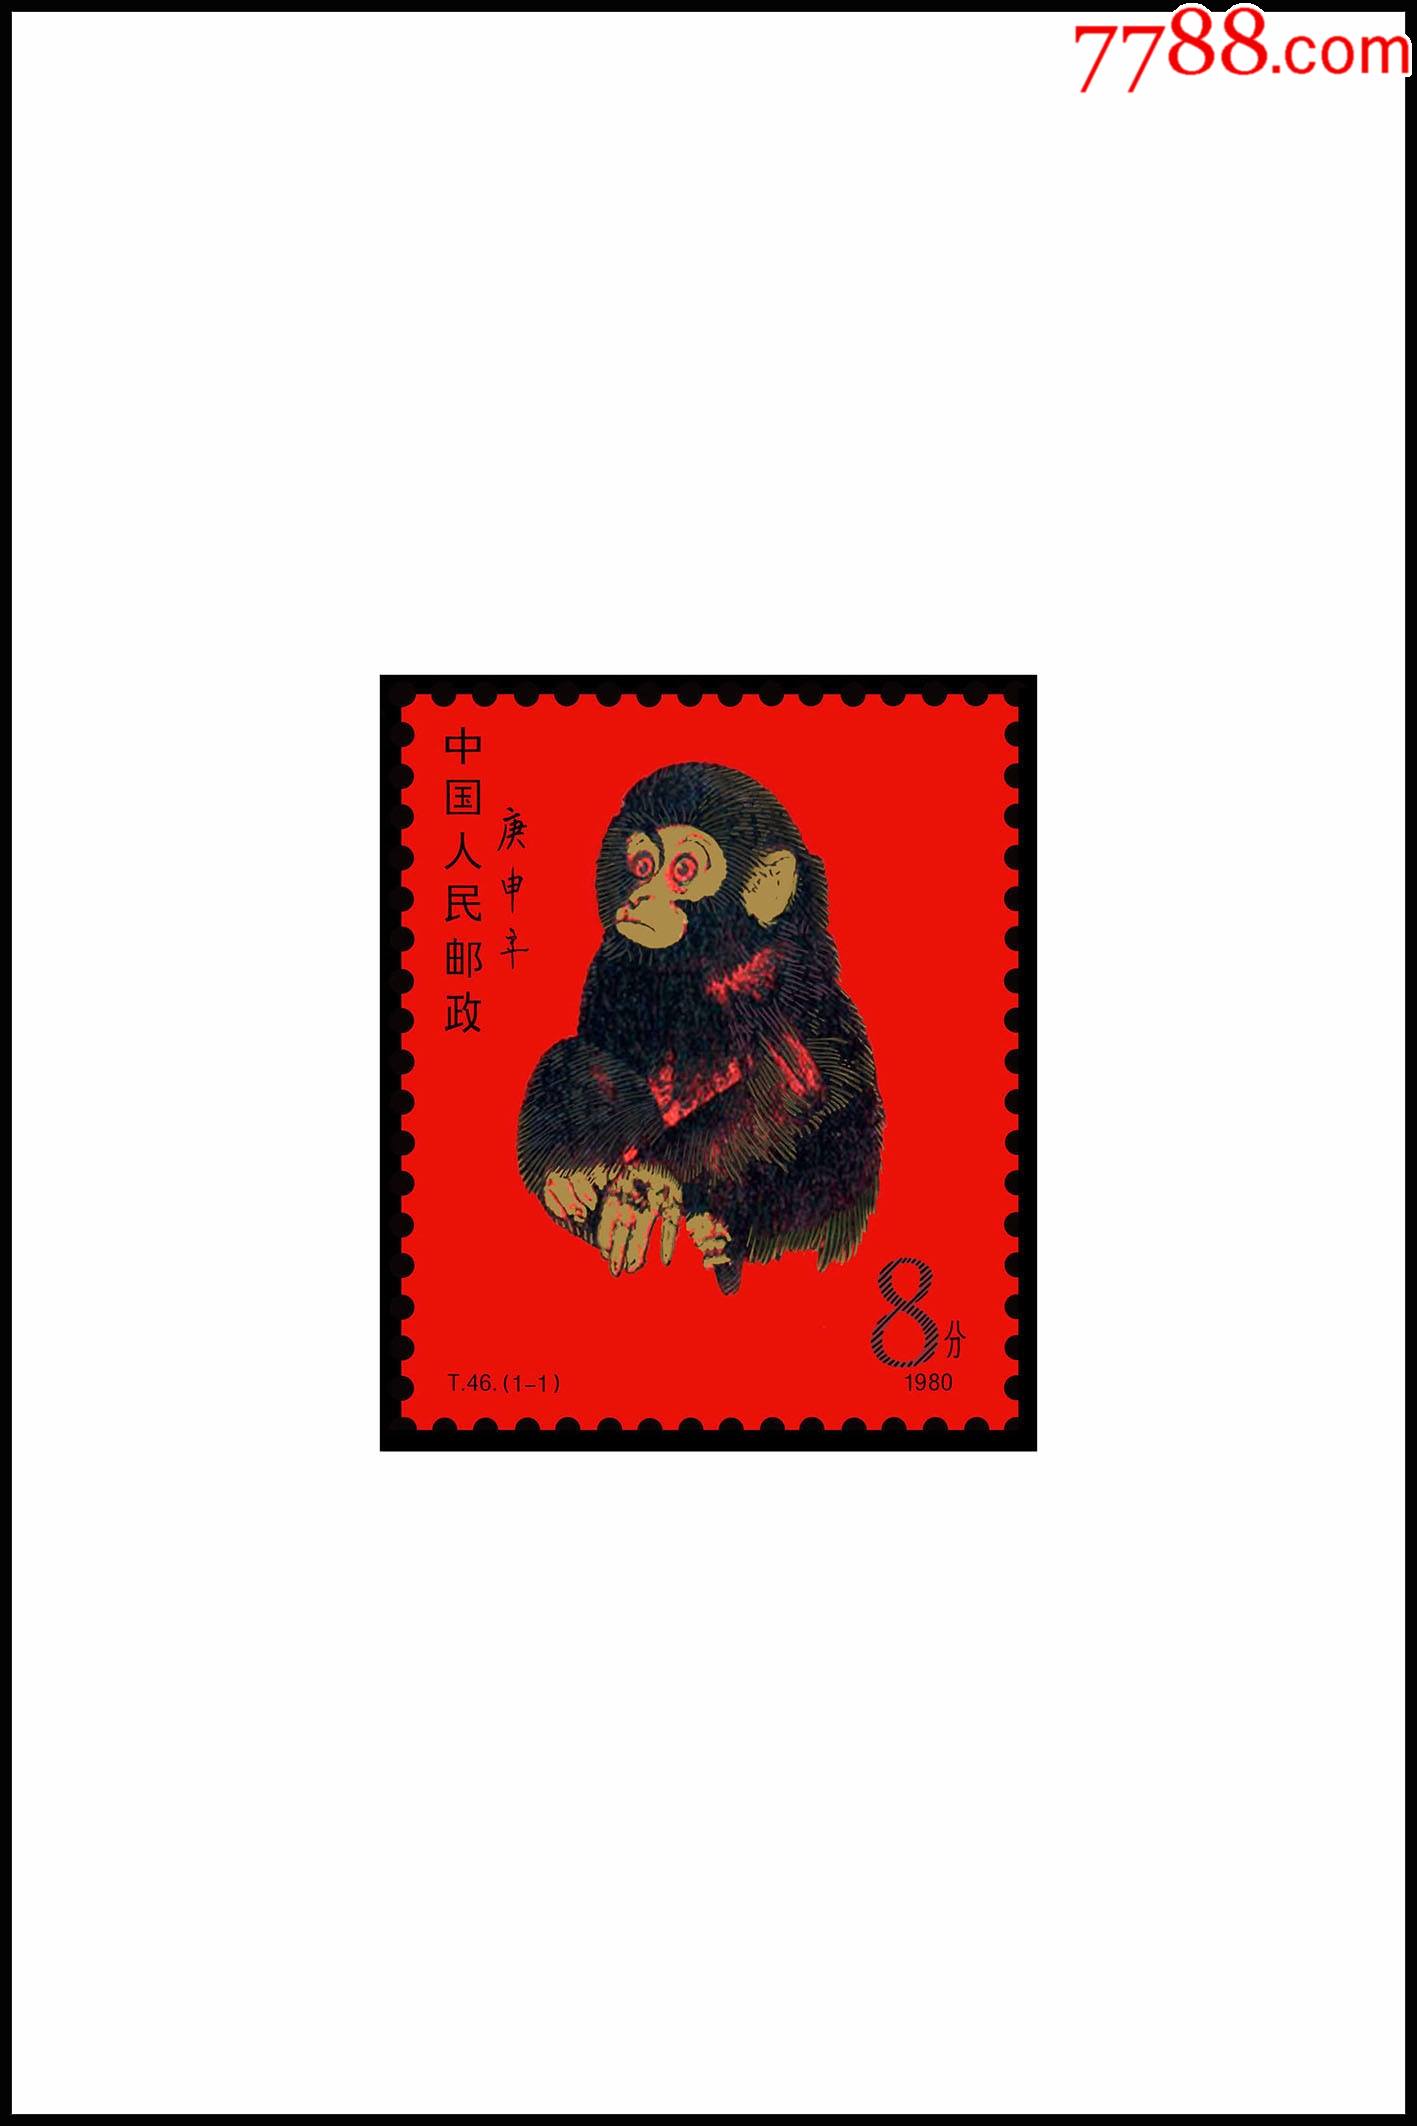 t46庚申年猴单枚无齿孔印刷品欣赏票